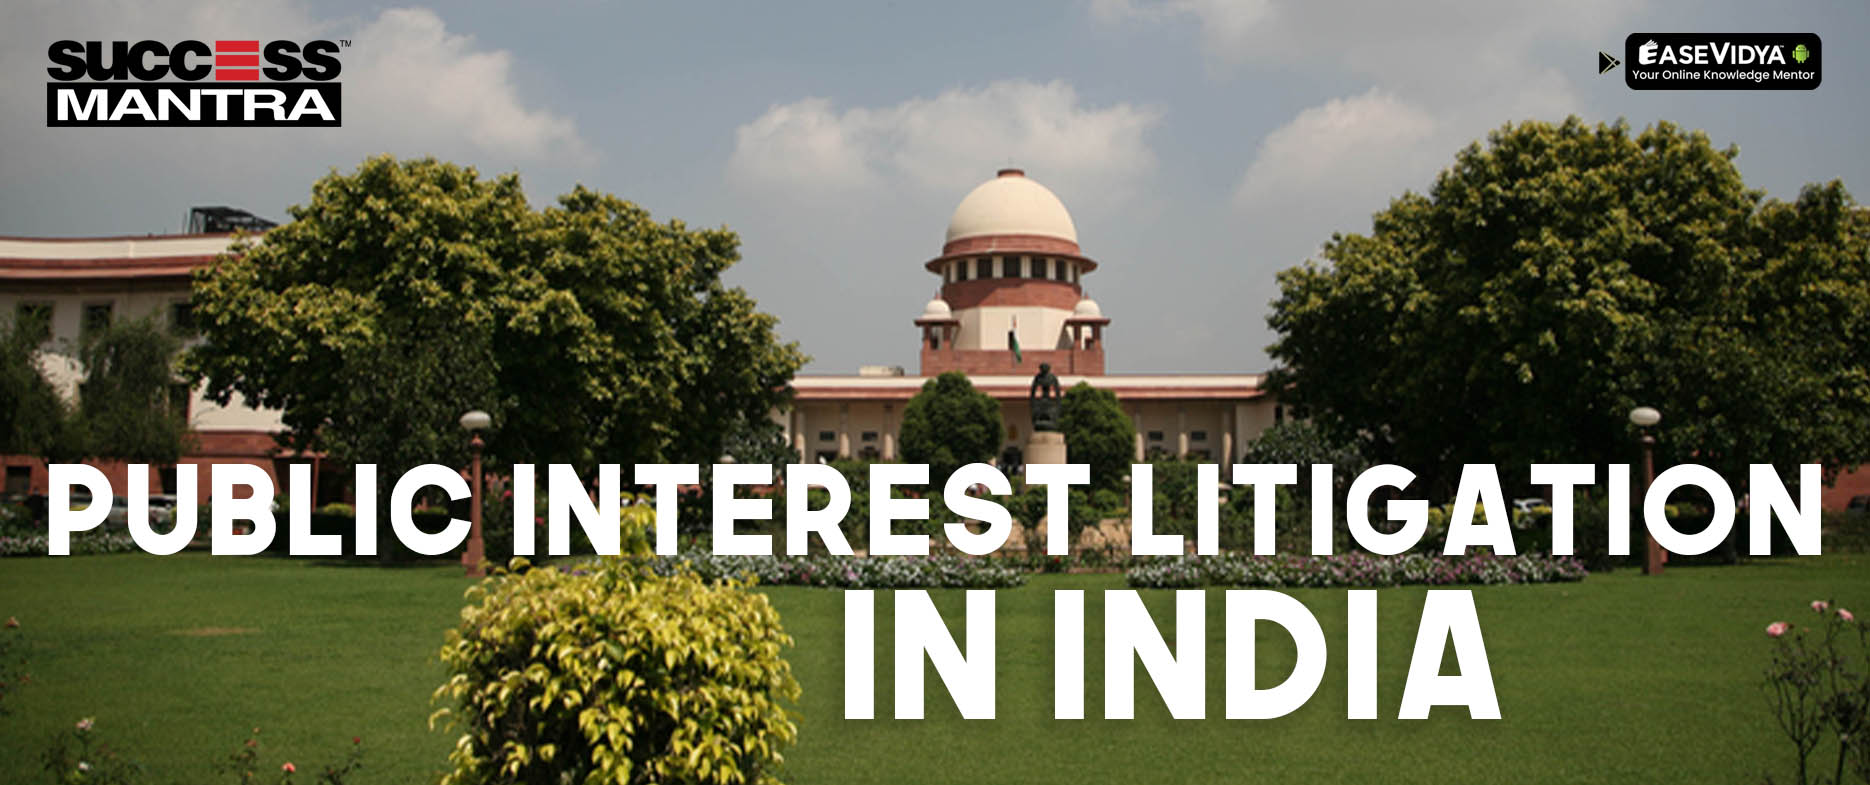 PIL in India, PIL, Public interest litigation